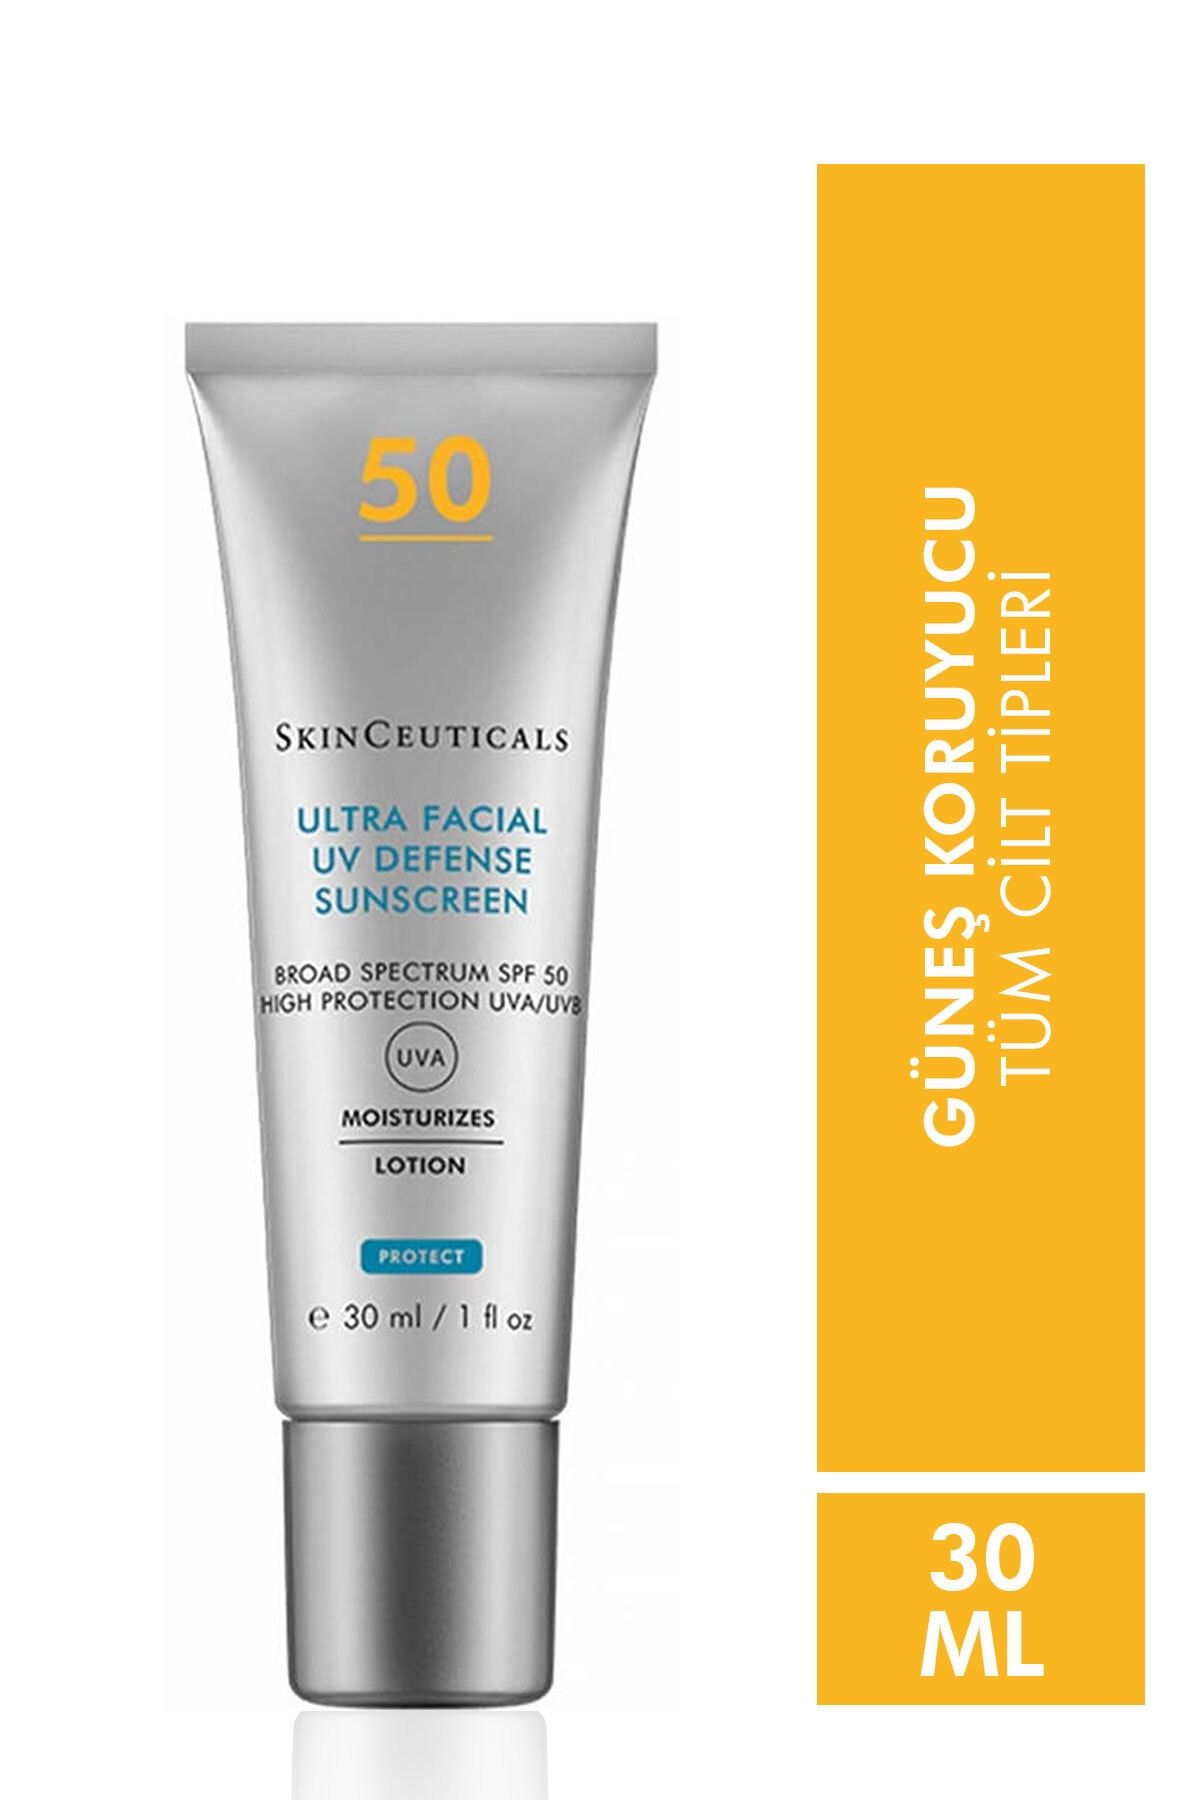 Skinceuticals Ultra Facial Defense Spf 50 + 30 ml